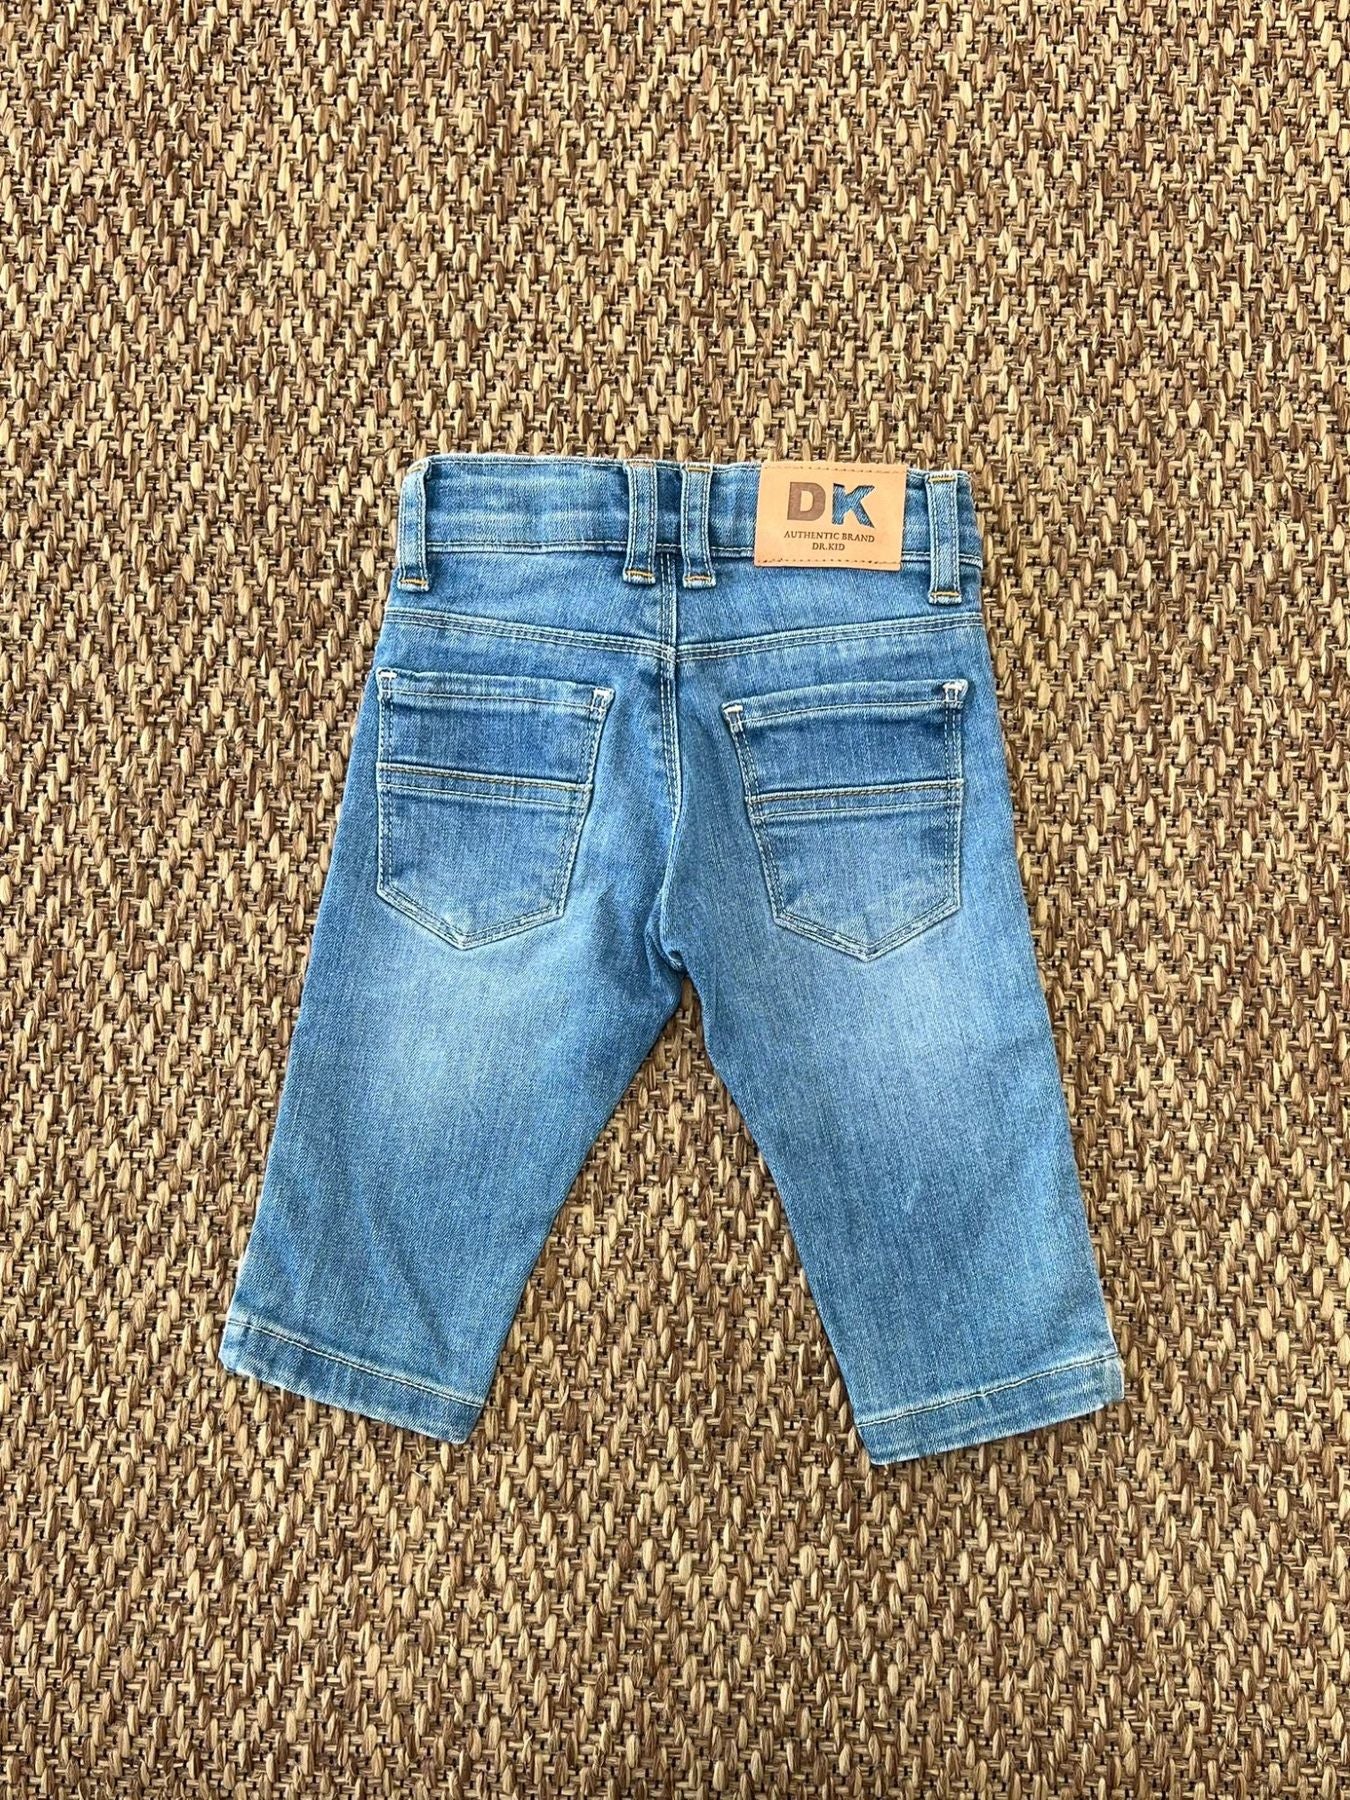 Jeans - DK55/PV24